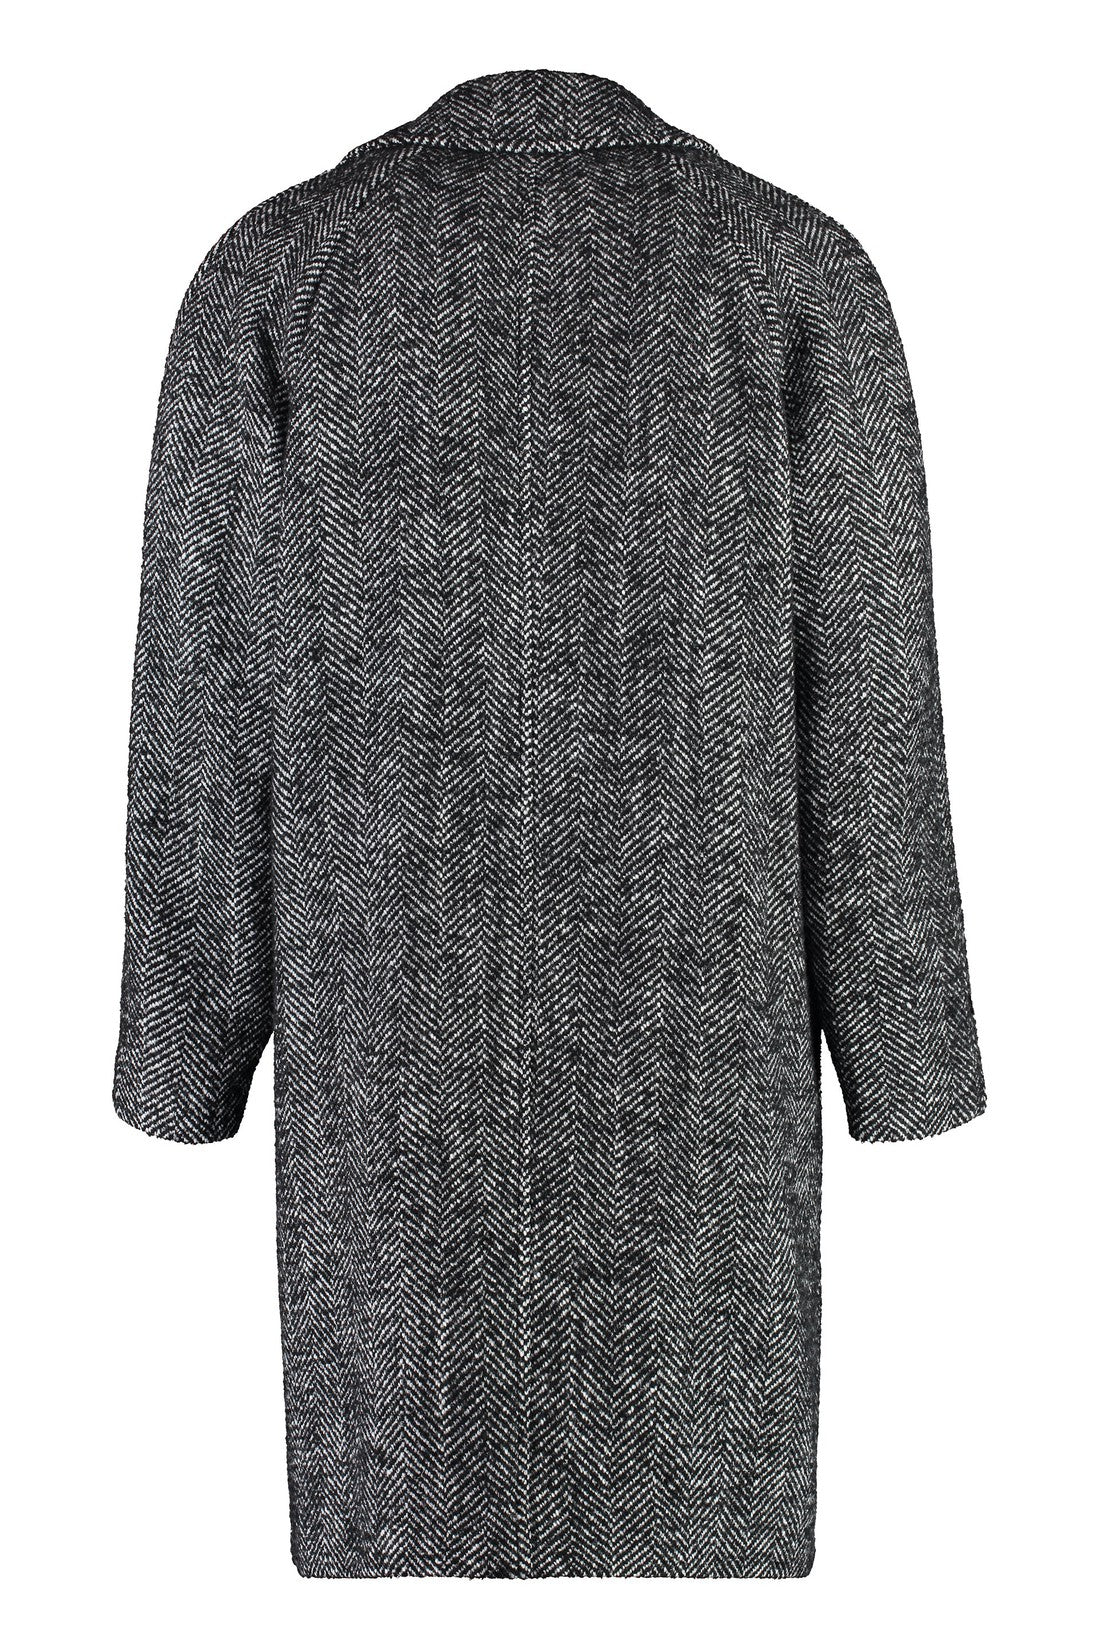 BOSS-OUTLET-SALE-Wool blend coat-ARCHIVIST